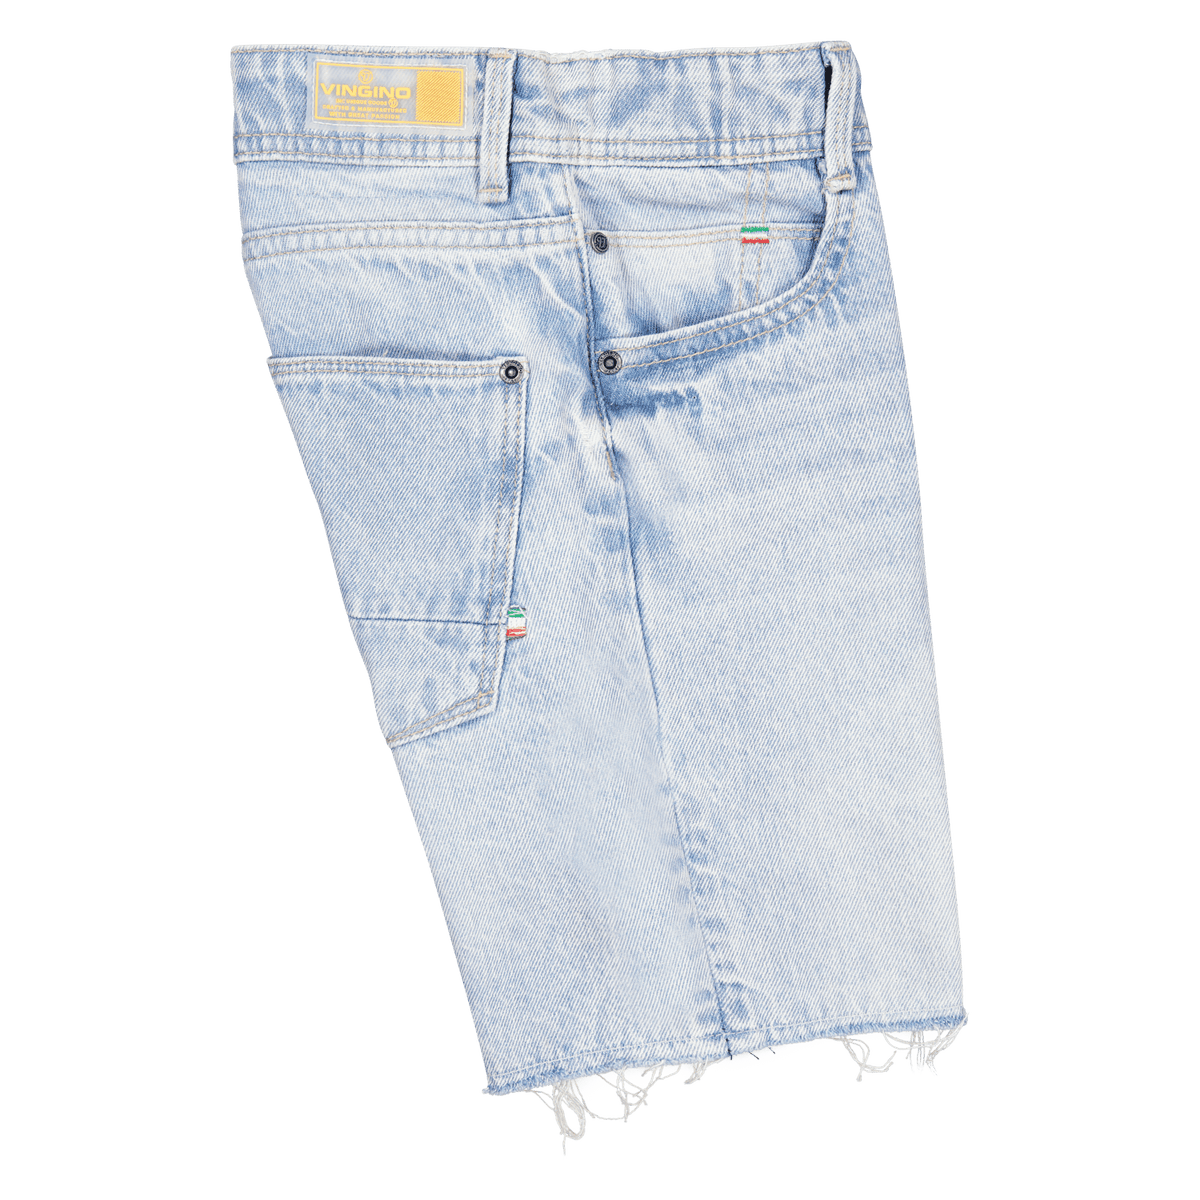 Jungen Jeans Shorts Hose Constanzo Light Vintage